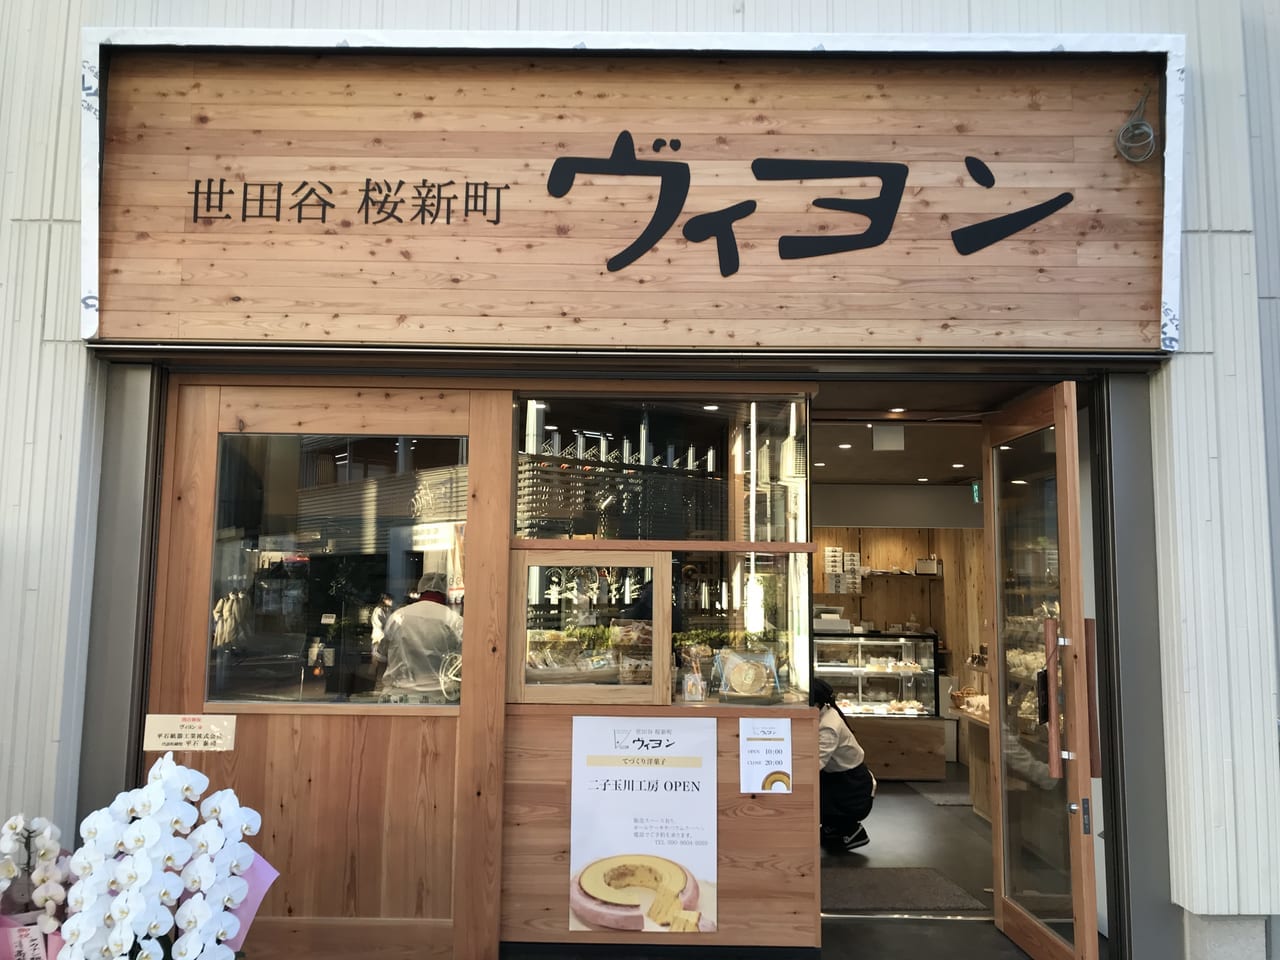 世田谷区二子玉川に桜新町洋菓子ヴィヨンが工房を移転プレオープンしました。